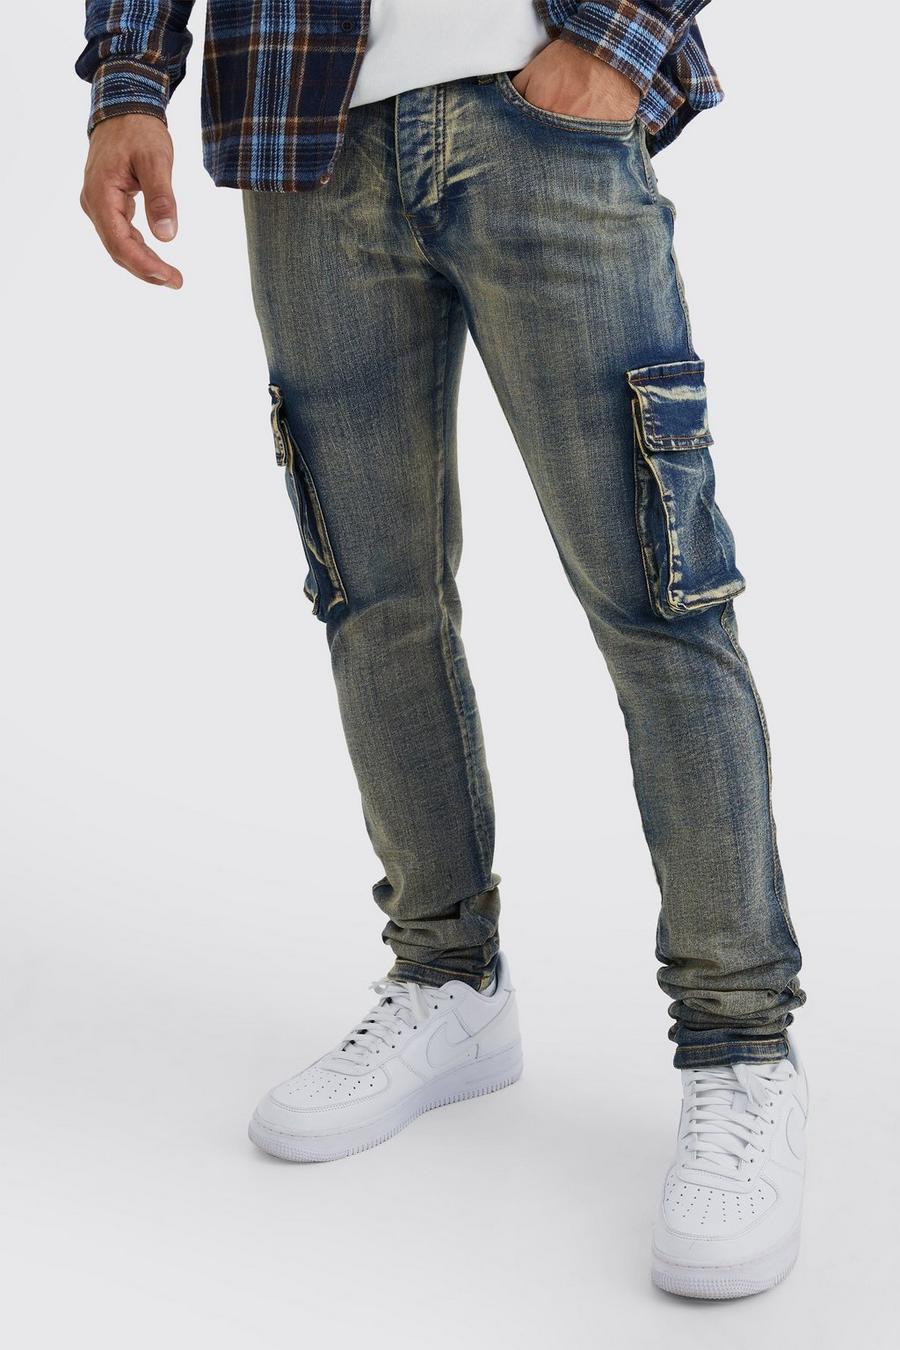 Jeans Cargo Skinny Fit Stretch stile Carpenter, Antique blue image number 1